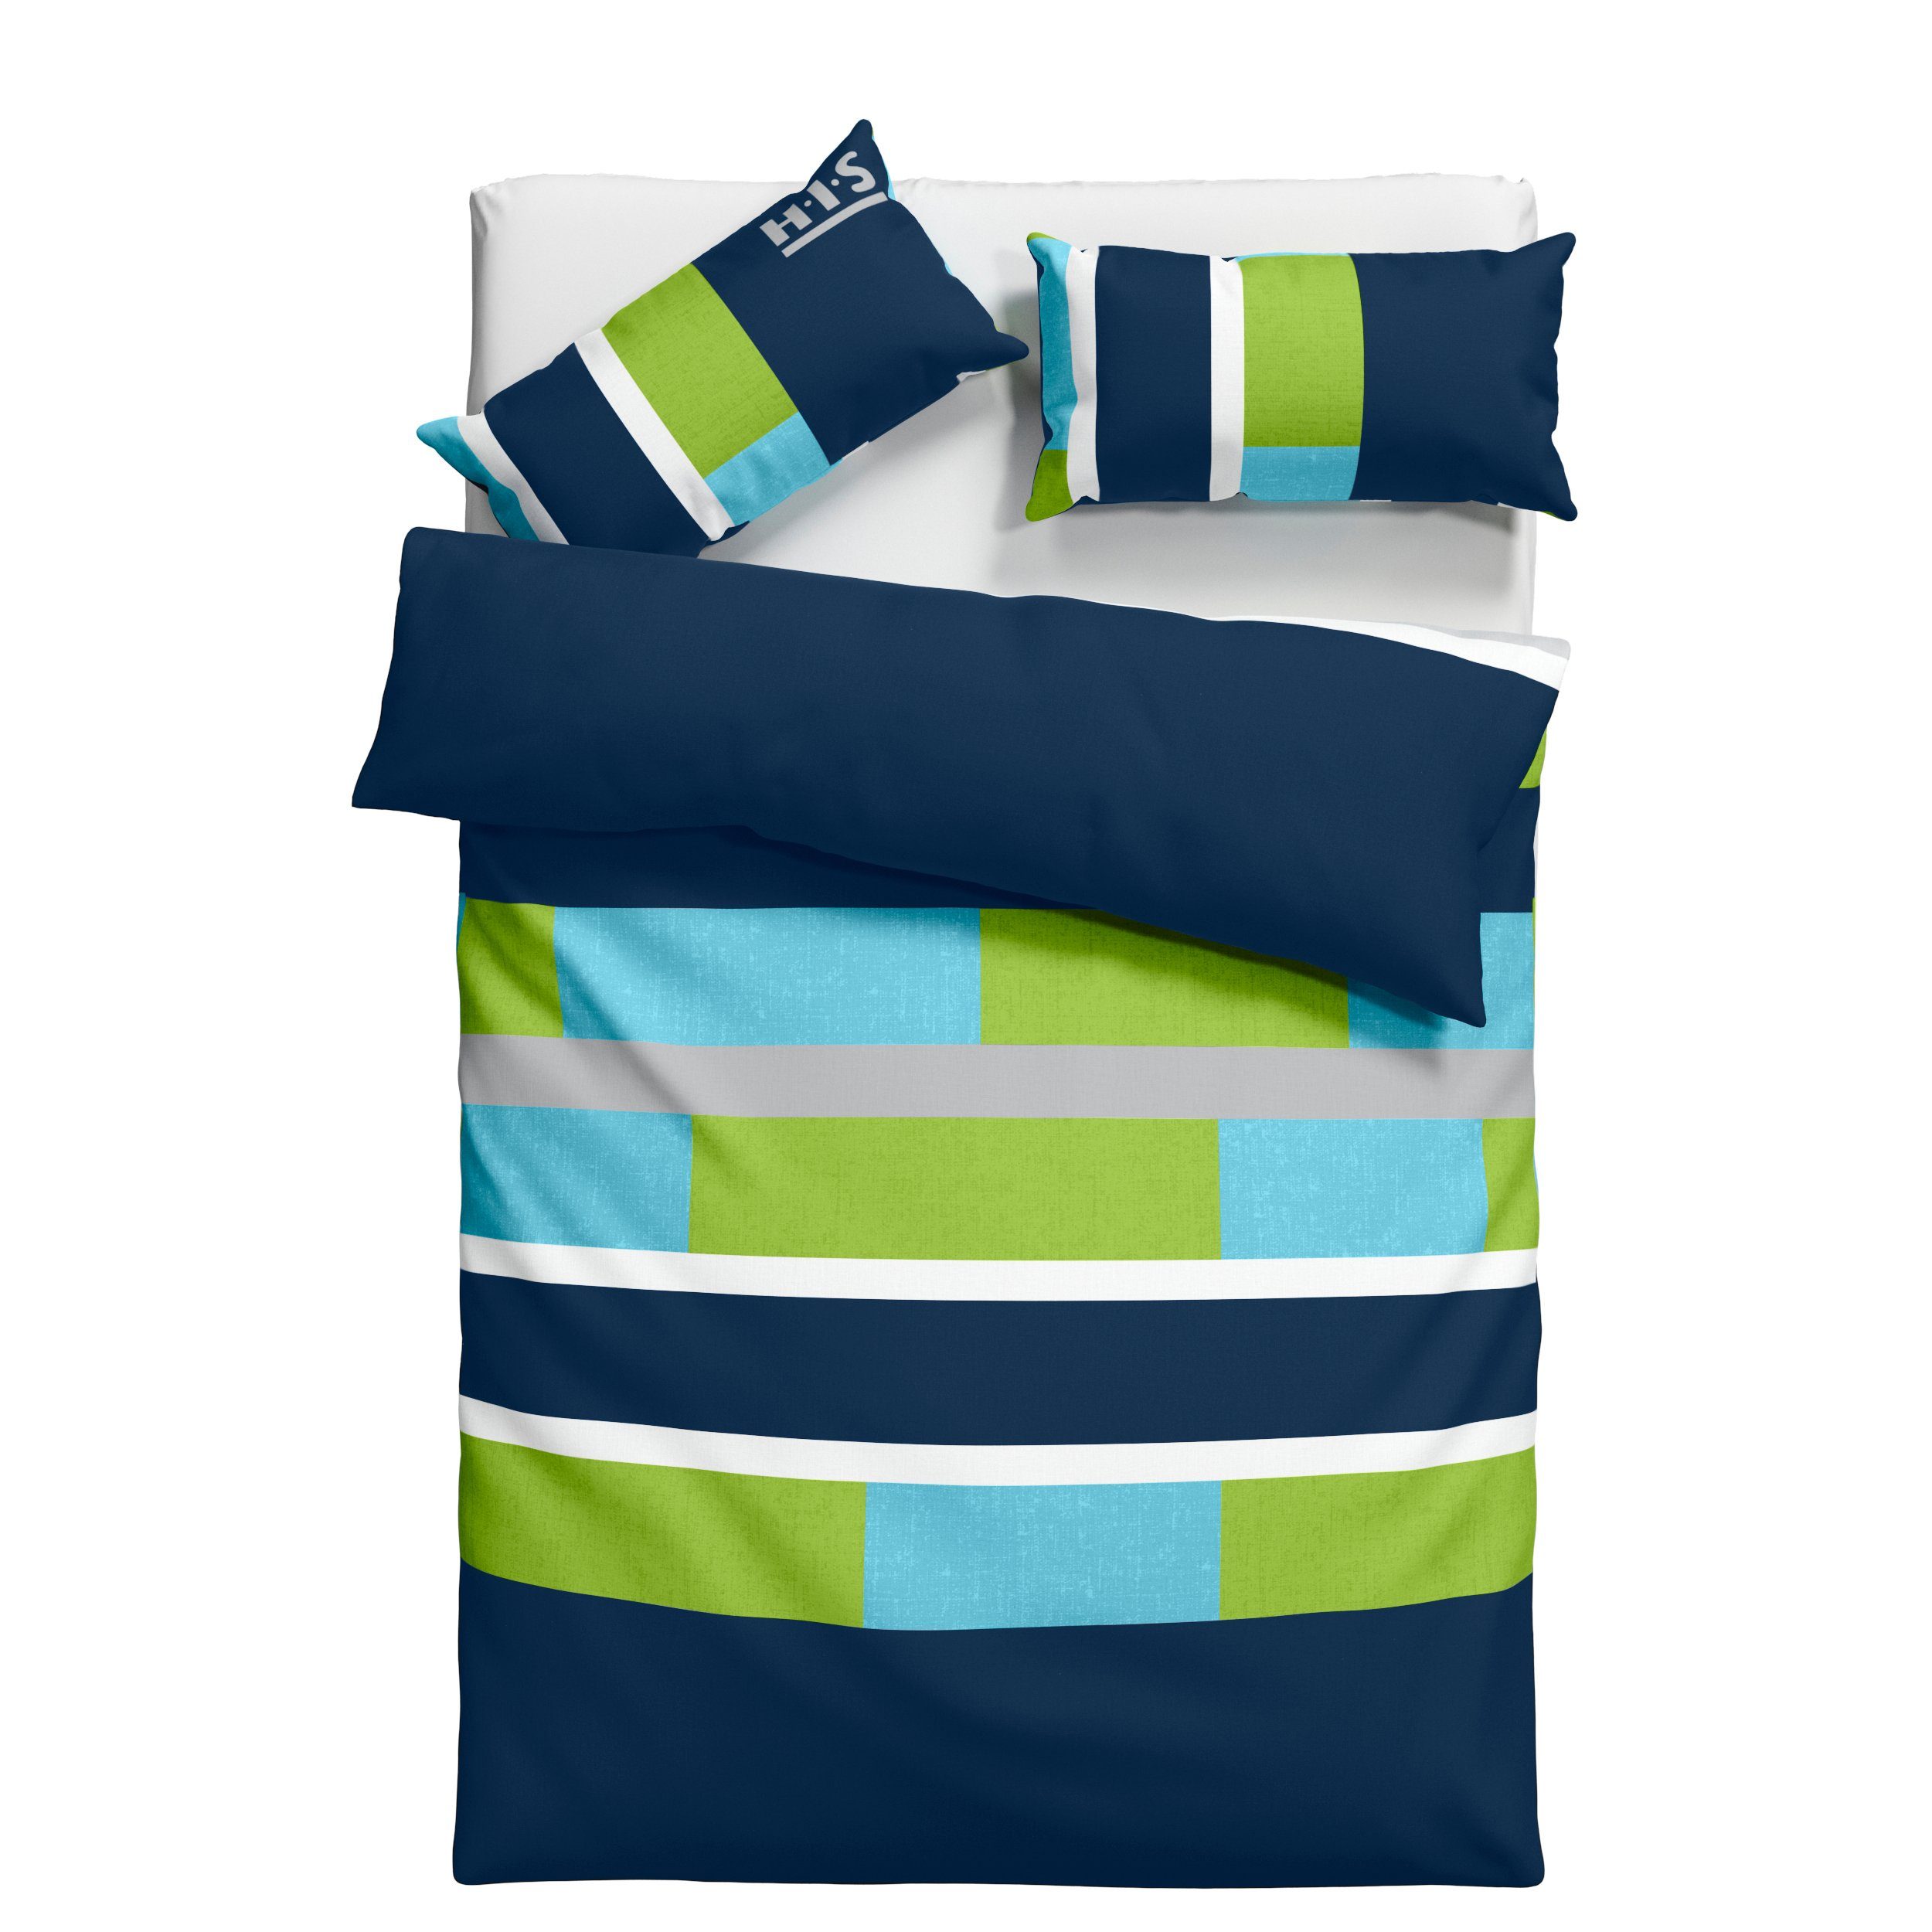 Bettwäsche Etienne in Gr. 135x200 oder 155x220 cm, H.I.S, Linon, 2 teilig, Bettwäsche aus Baumwolle, zeitlose Bettwäsche mit Streifen-Design blau/grün